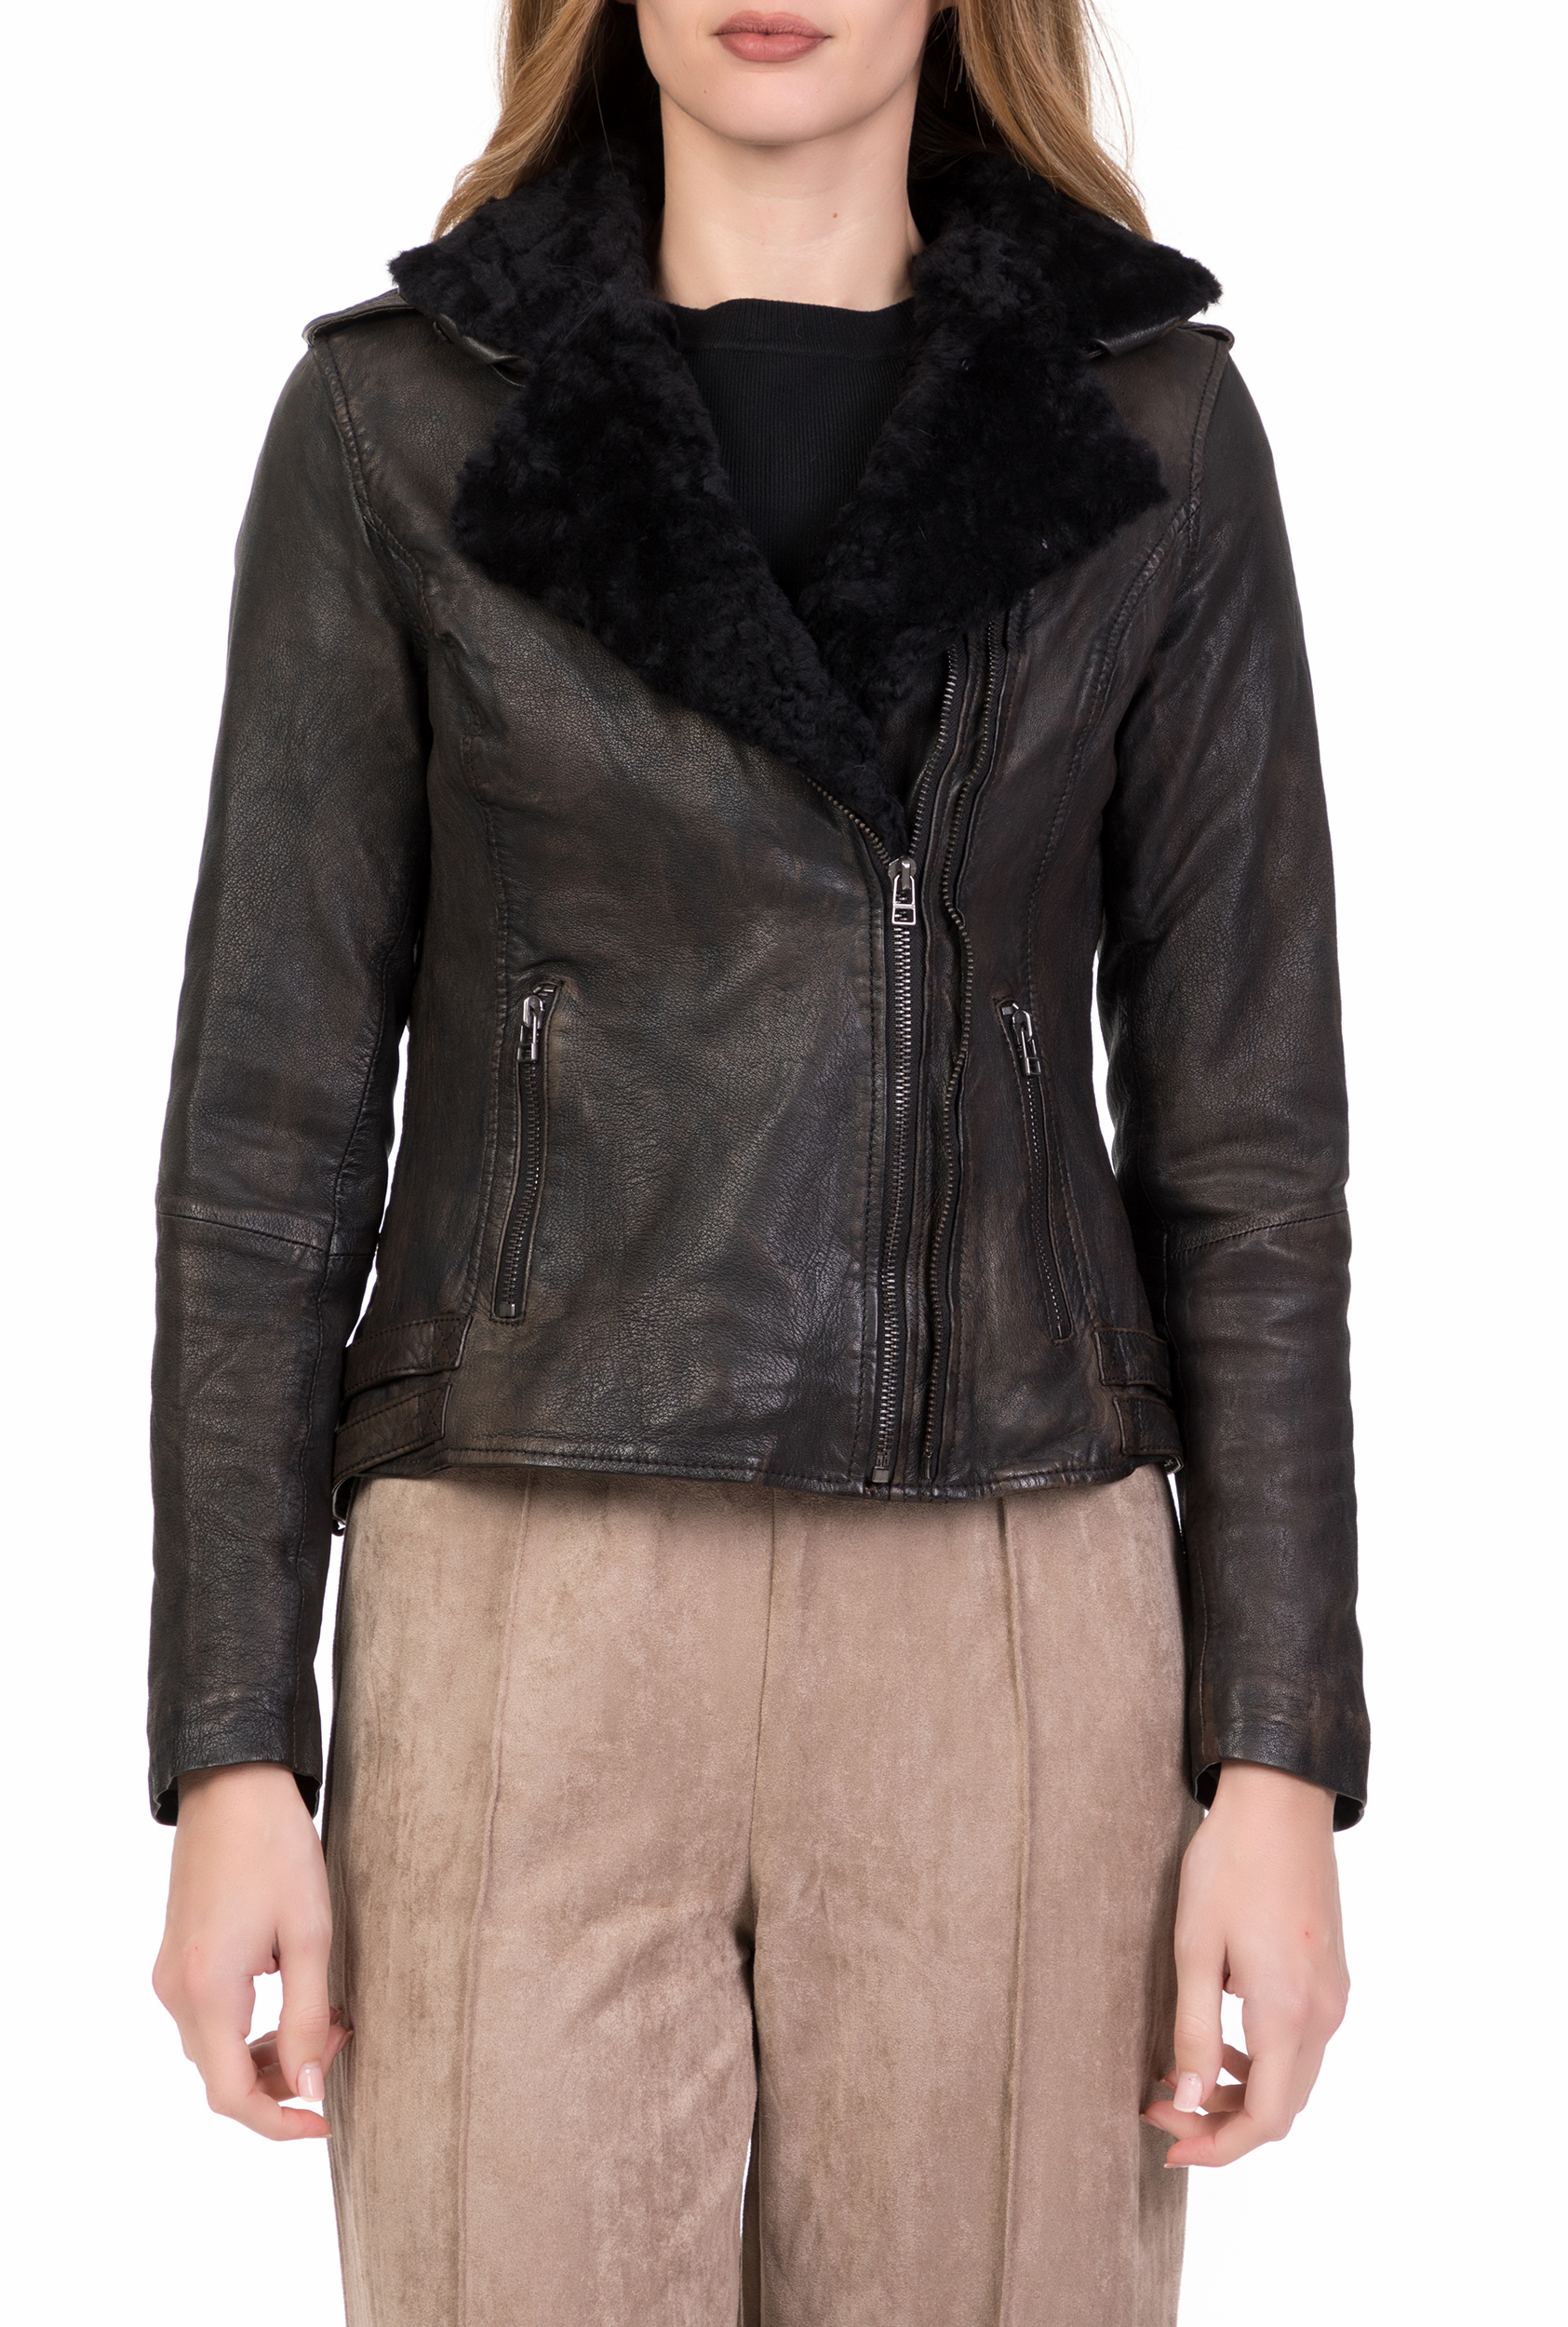 GOOSECRAFT – Γυναικείο δερμάτινο jacket με γουνάκι BIKER497 GOOSECRAFT καφέ 1695791.0-7172